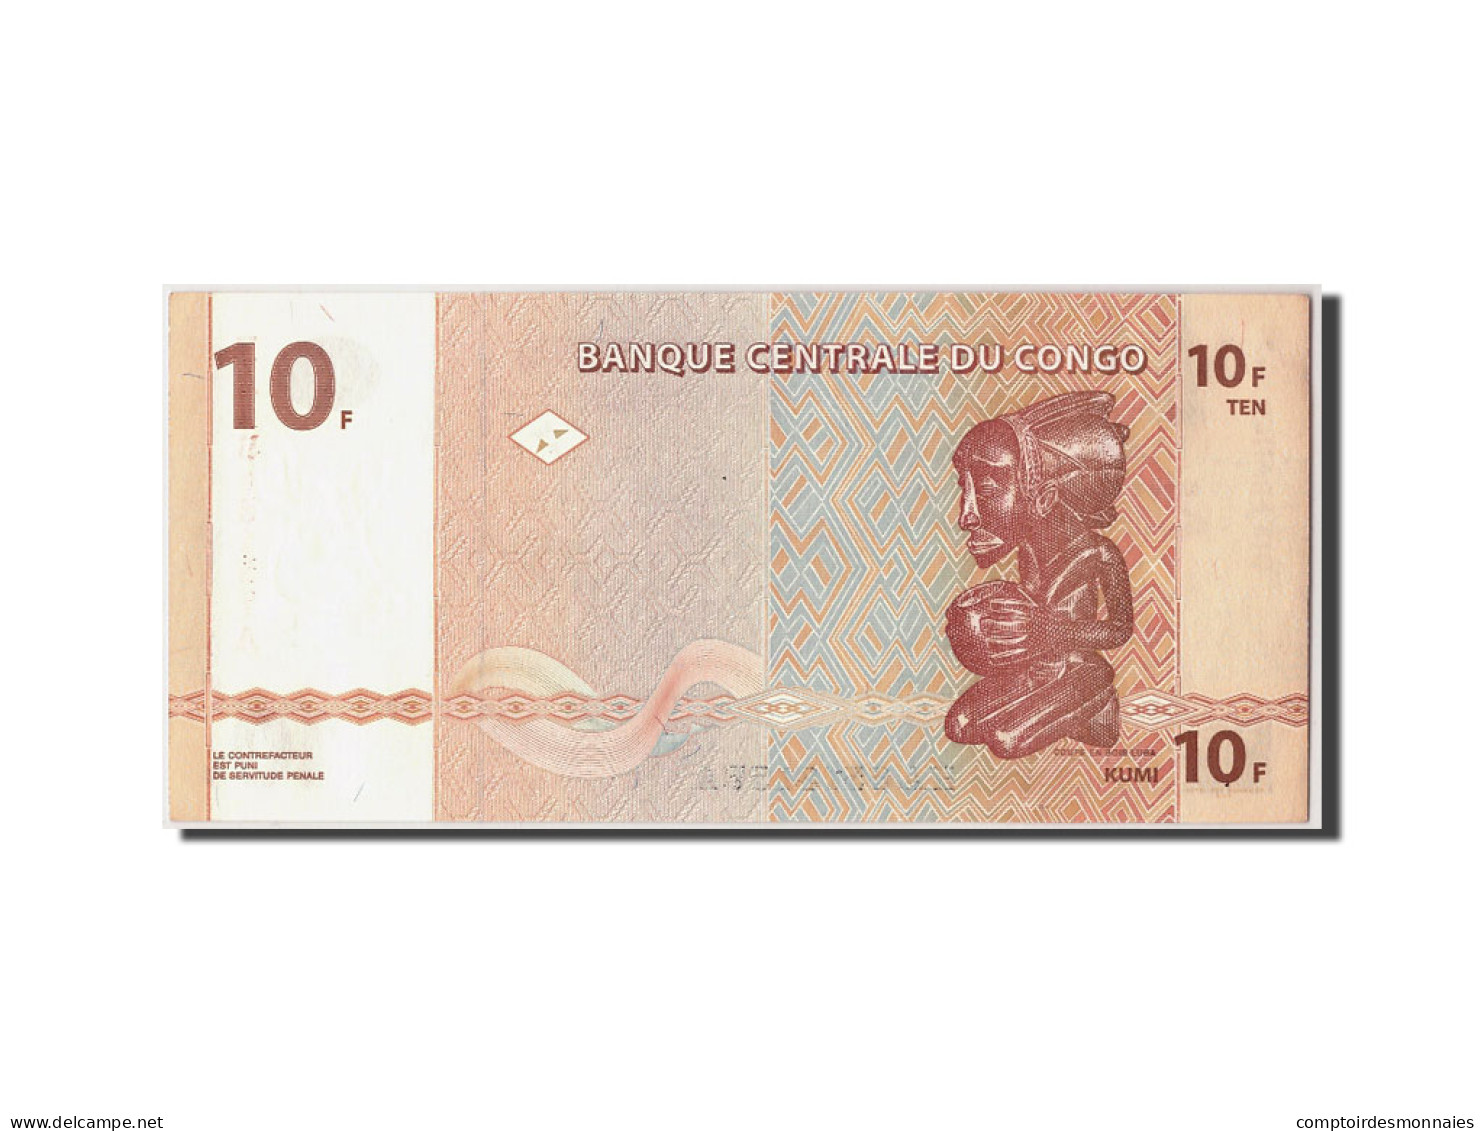 Billet, Congo Democratic Republic, 10 Francs, 2003, 2003-06-30, KM:93a, NEUF - Democratic Republic Of The Congo & Zaire